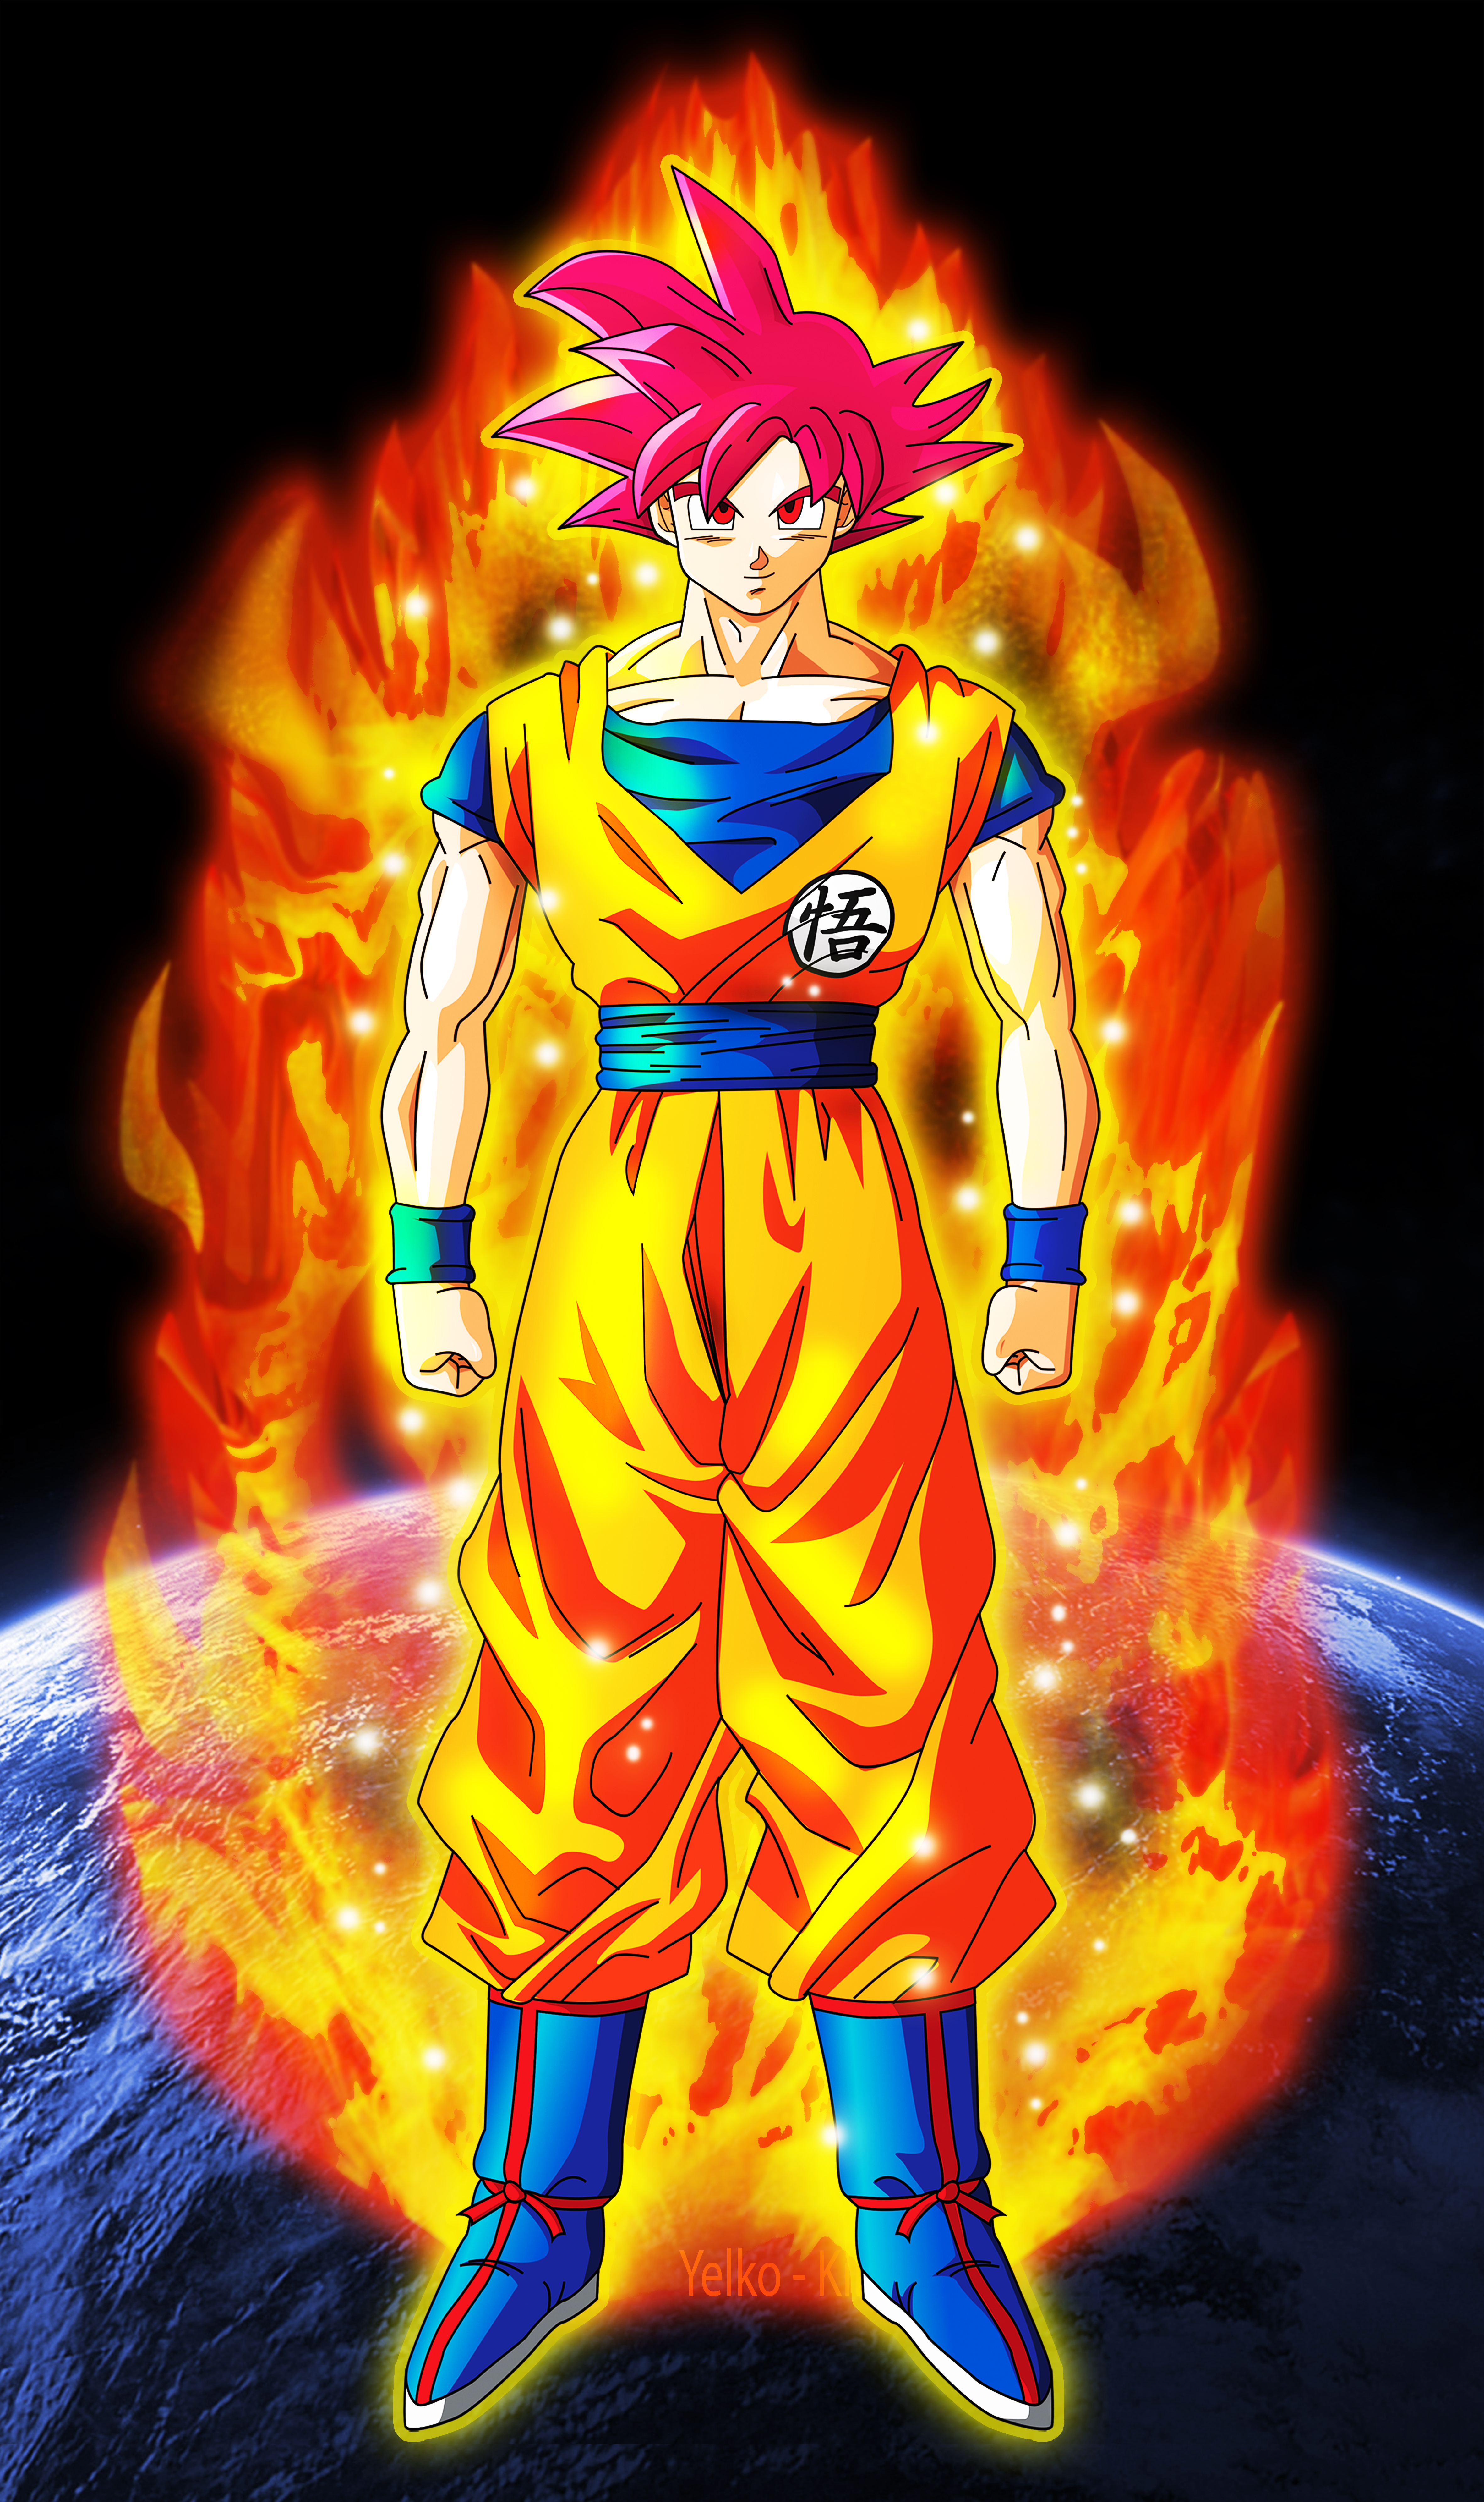 Goku Super Saiyan God DBZ 2013 by XYelkiltroX 4724x7962